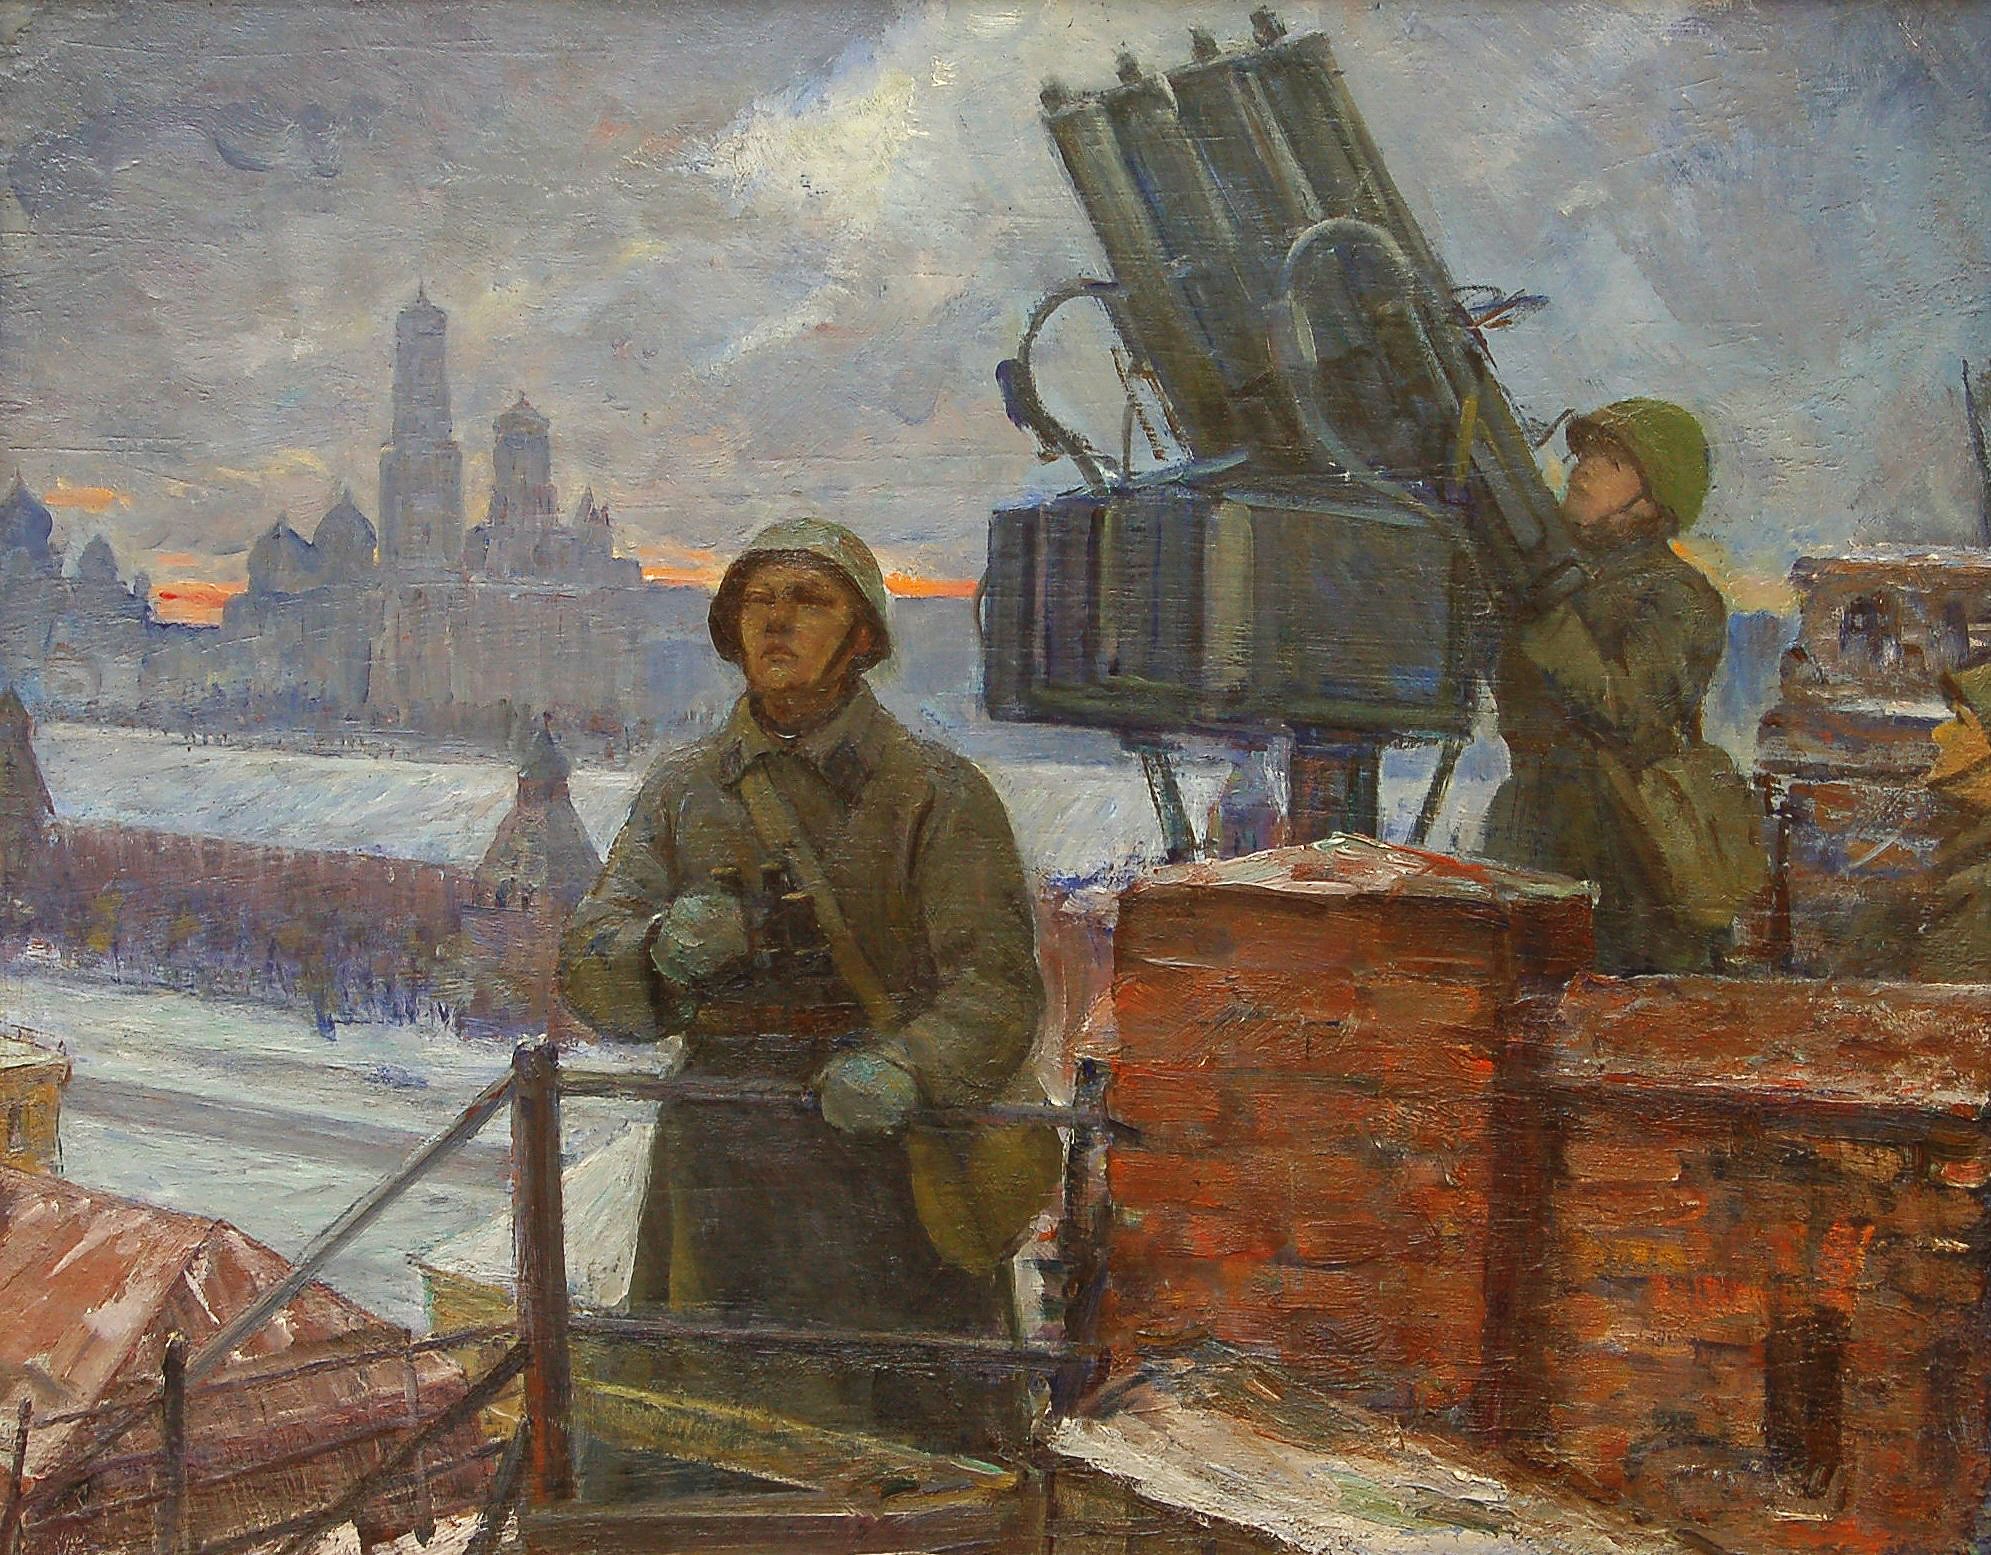 Оборона Москвы 1941